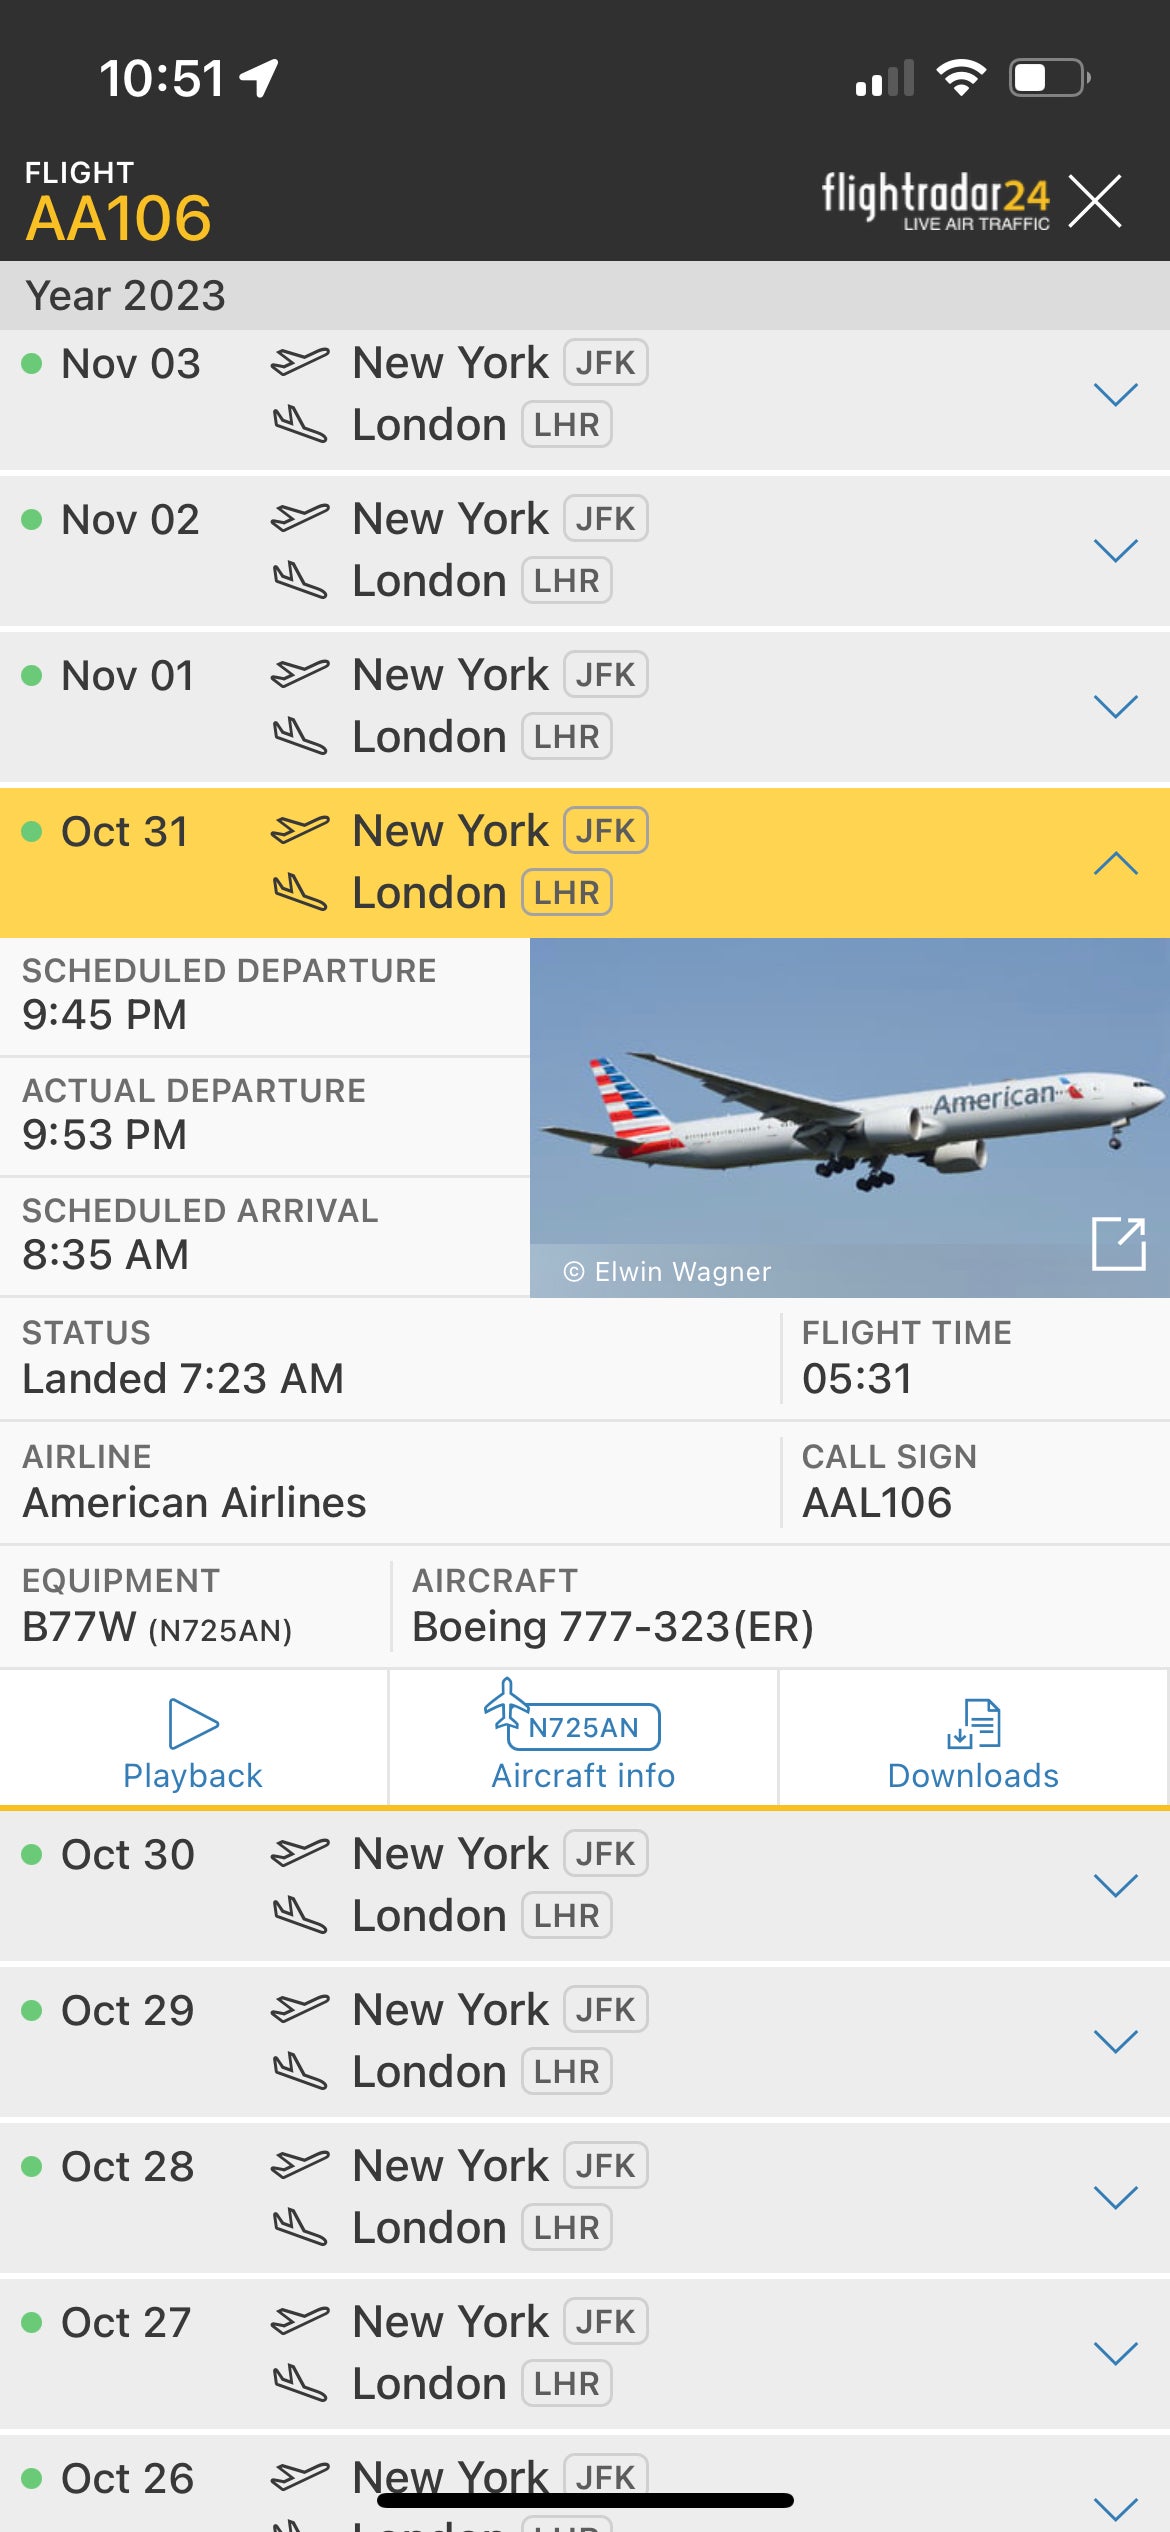 AA flight 106 JFK to LHR on October 31, 2023.